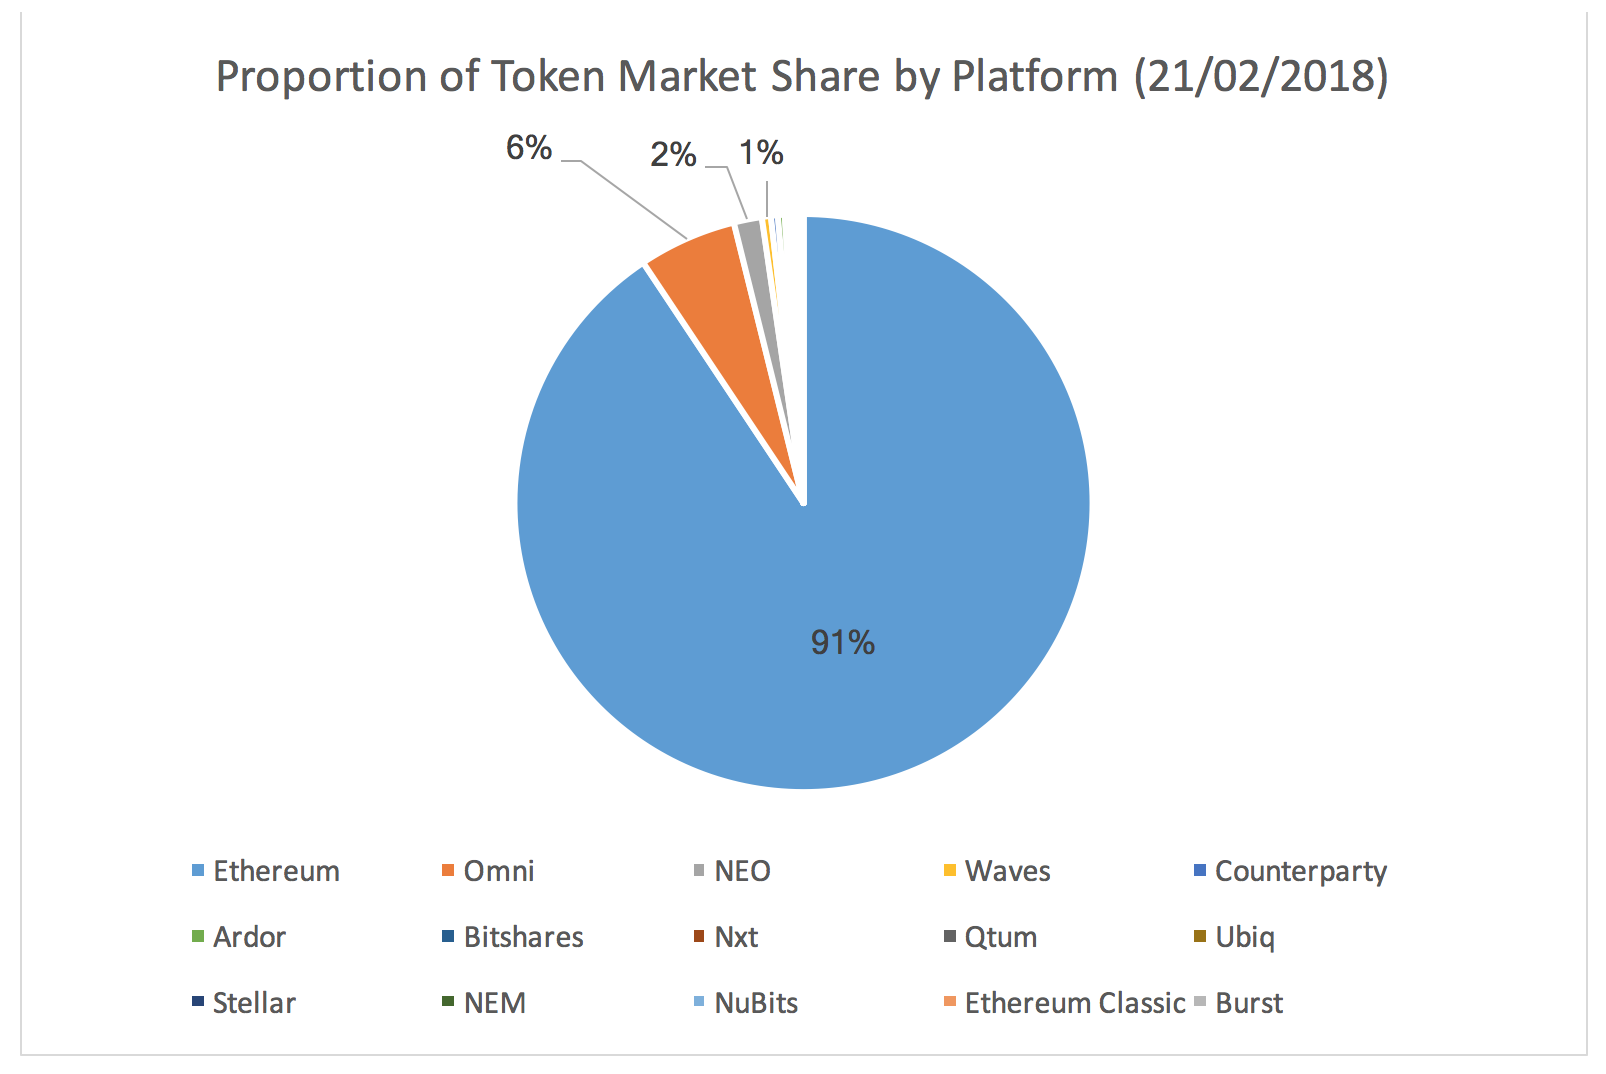 Ethereum host the vast majority of tokens